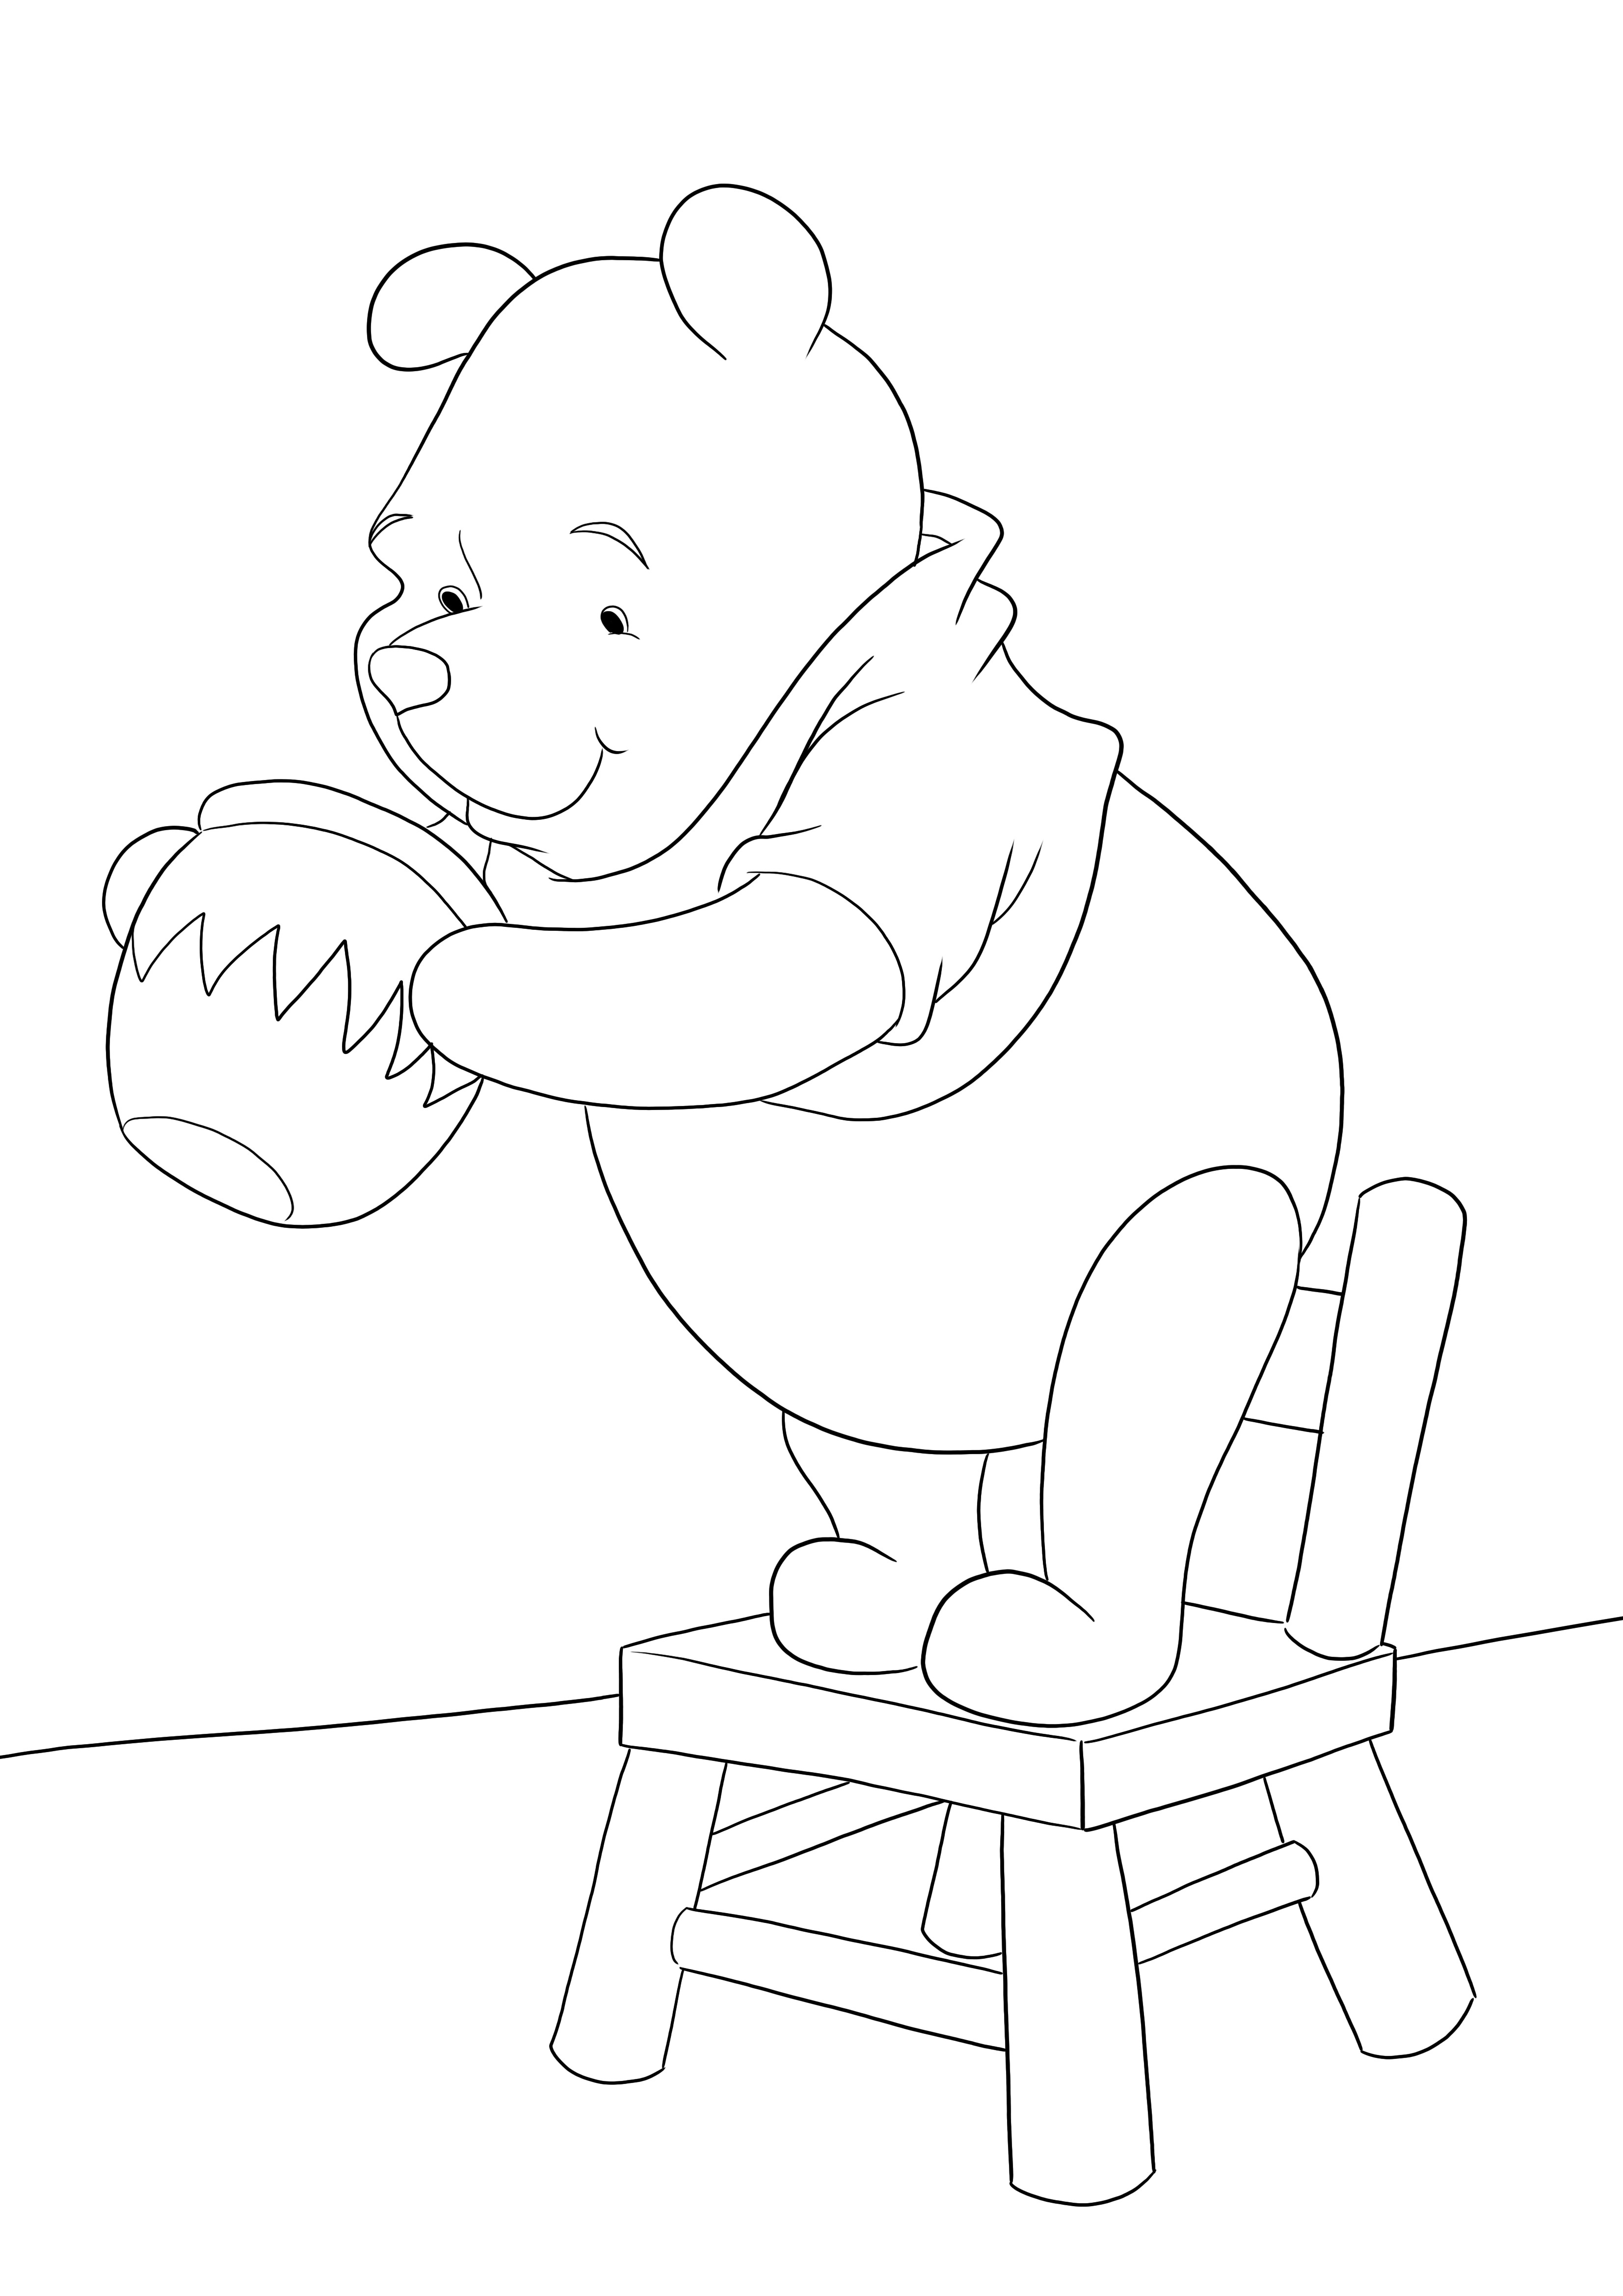 O imagine de colorat cu Winnie caută miere gata de imprimat sau descărcat